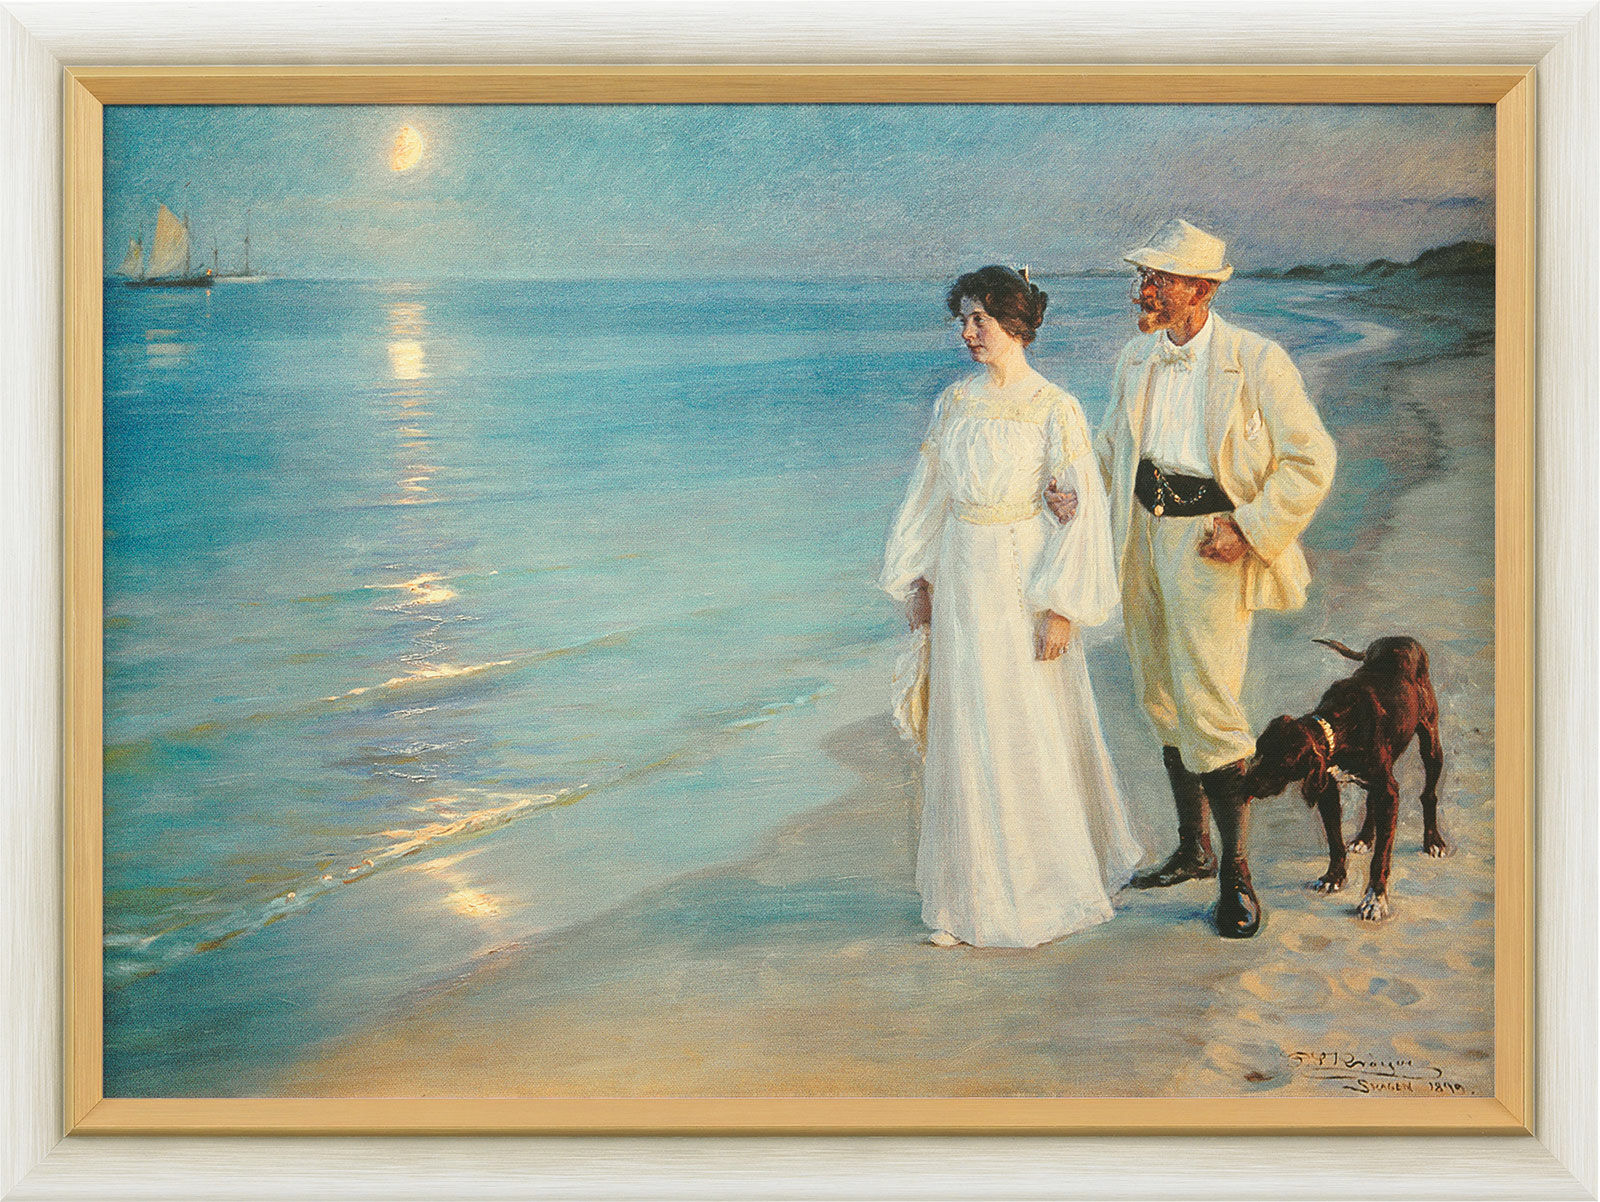 Tableau "Soirée d'été à la plage de Skagen - L'artiste et sa femme" (1899), encadré von Peder Severin Kroyer